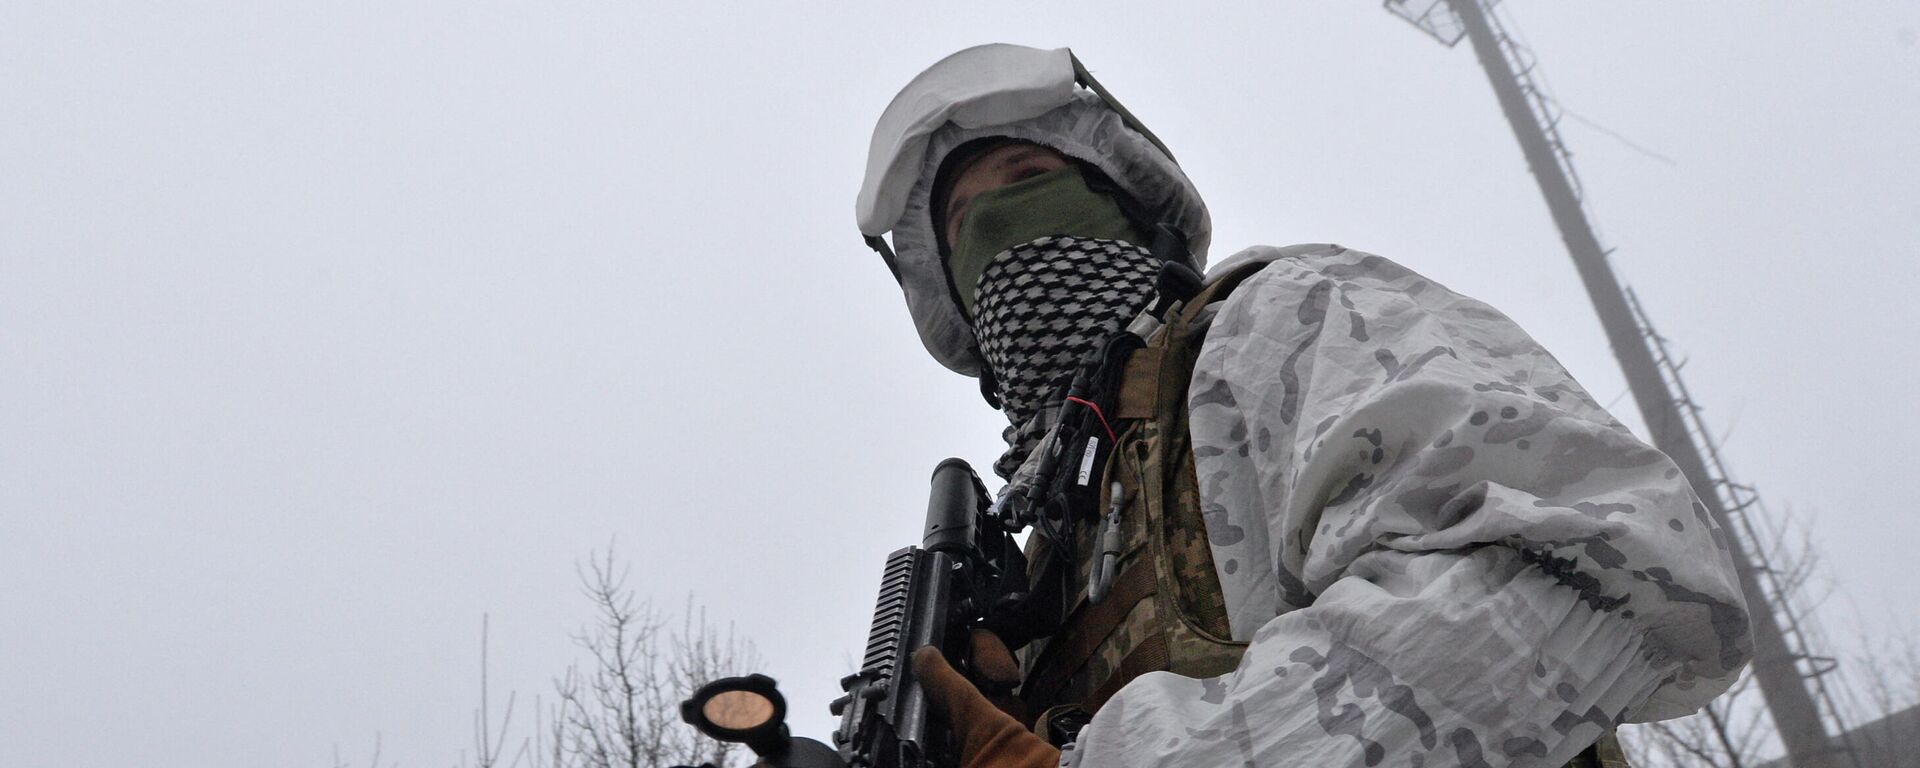 Soldado das Forças Armadas da Ucrânia nas proximidades da linha de contato na região de Donetsk, Ucrânia, 11 de fevereiro de 2022 - Sputnik Brasil, 1920, 19.02.2022